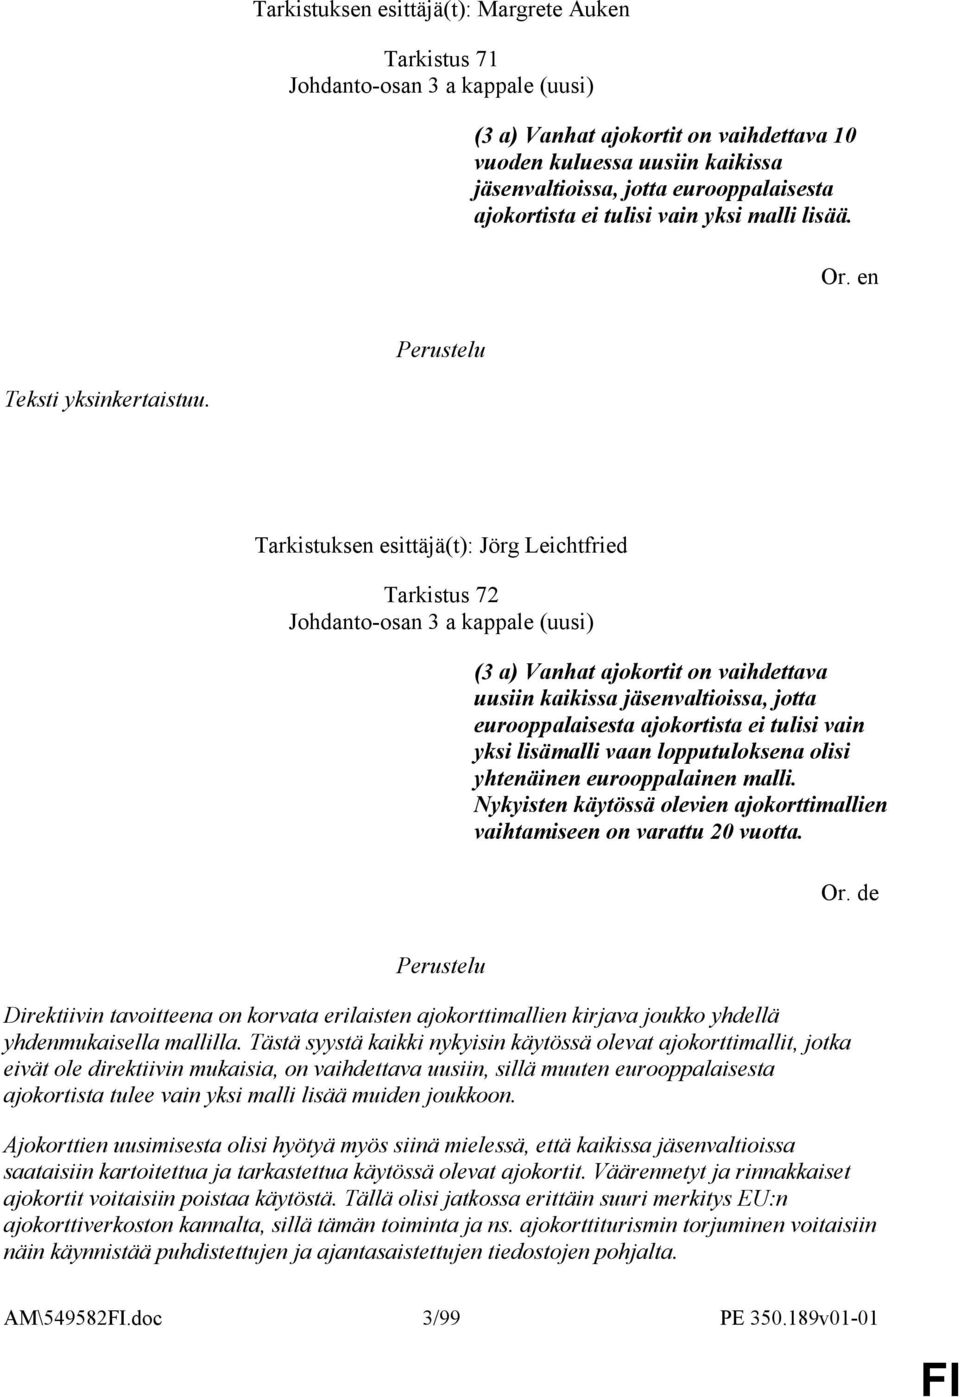 Tarkistuksen esittäjä(t): Jörg Leichtfried Tarkistus 72 Johdanto-osan 3 a kappale (uusi) (3 a) Vanhat ajokortit on vaihdettava uusiin kaikissa jäsenvaltioissa, jotta eurooppalaisesta ajokortista ei